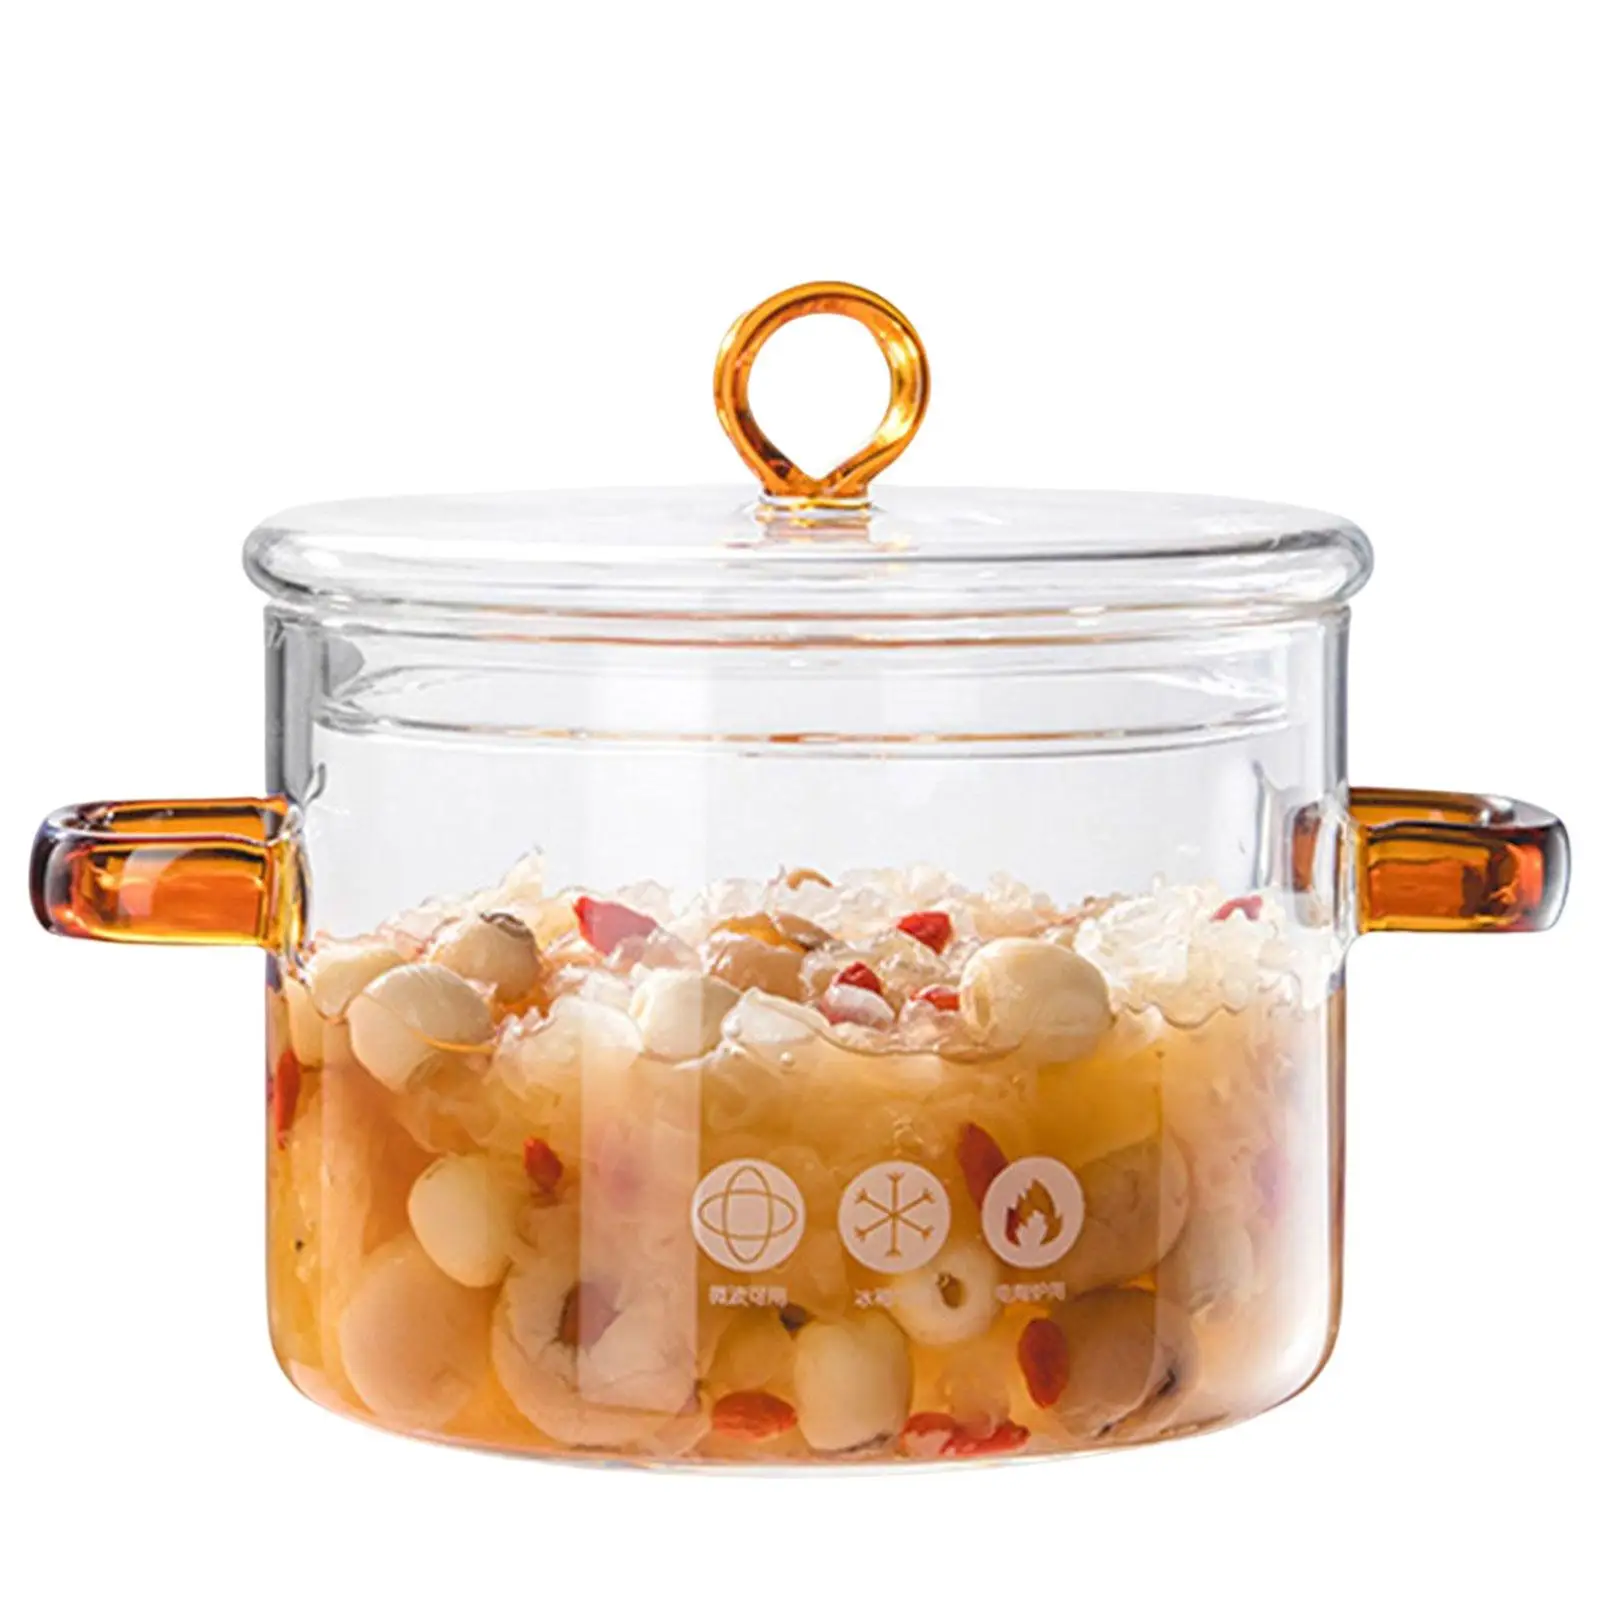 Glass Soup Porridge Pot Transparent Cookware with Cover Microwave Heating Soup Pot Simmer Pot for Tea Pasta Noodle Soup Kitchen